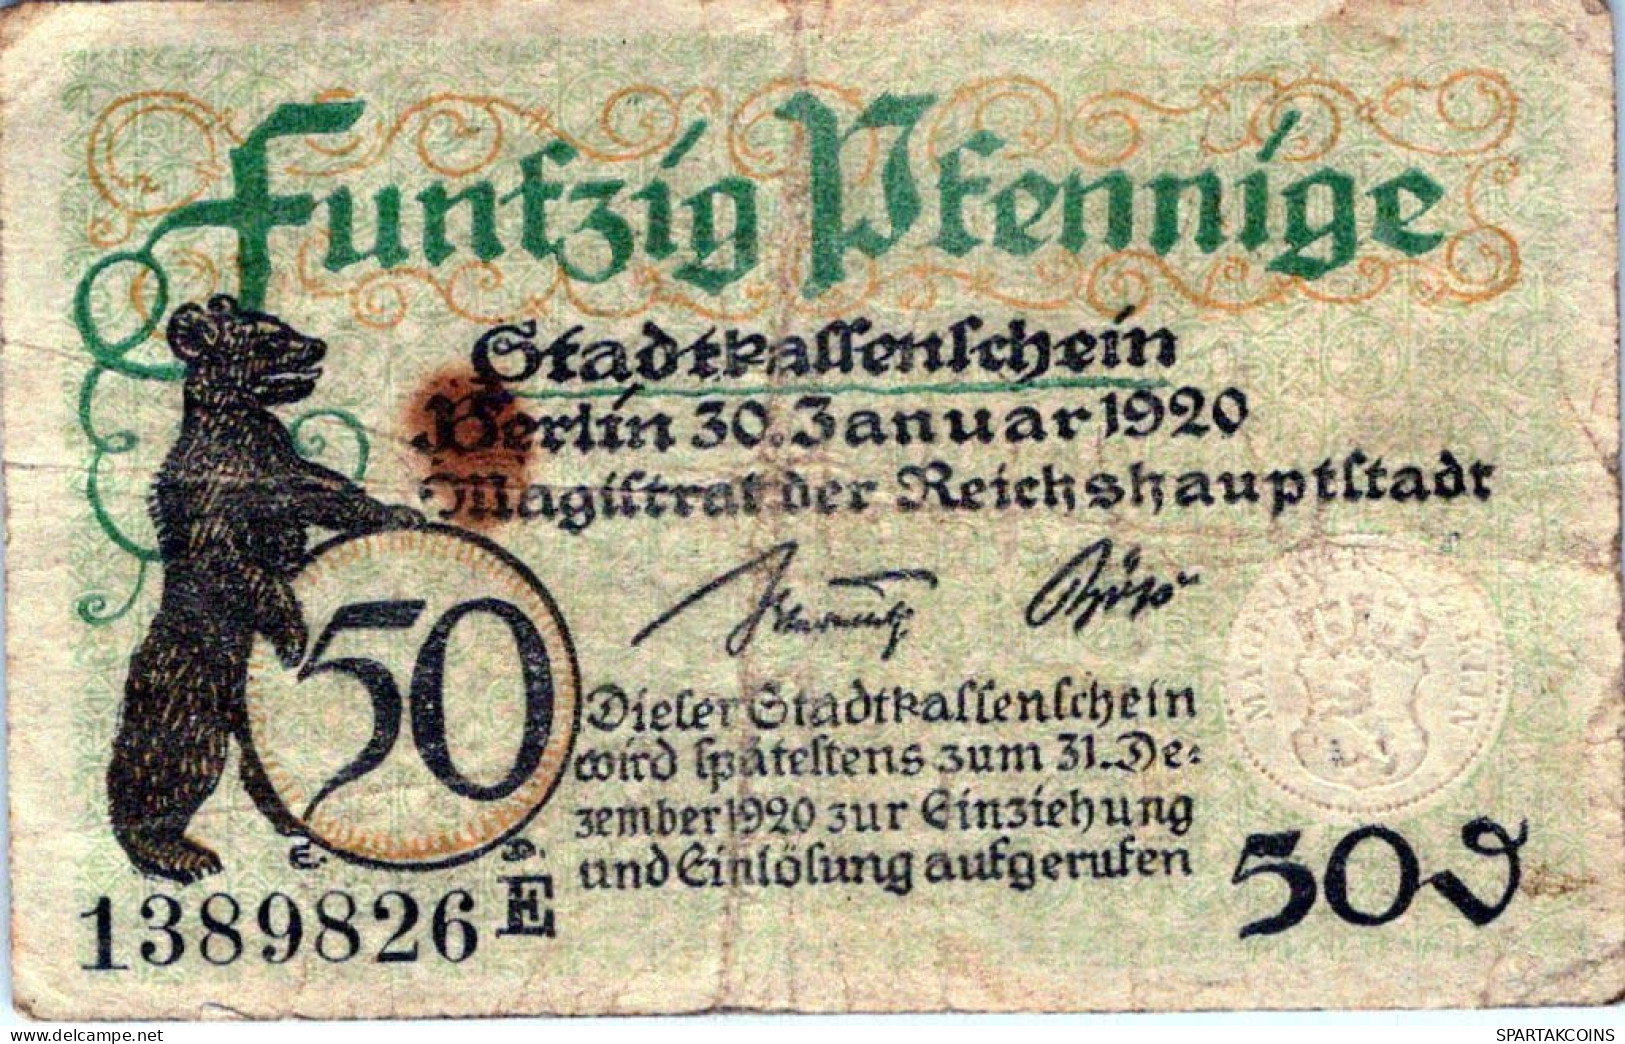 50 PFENNIG 1920 Stadt BERLIN DEUTSCHLAND Notgeld Banknote #PG479 - [11] Local Banknote Issues